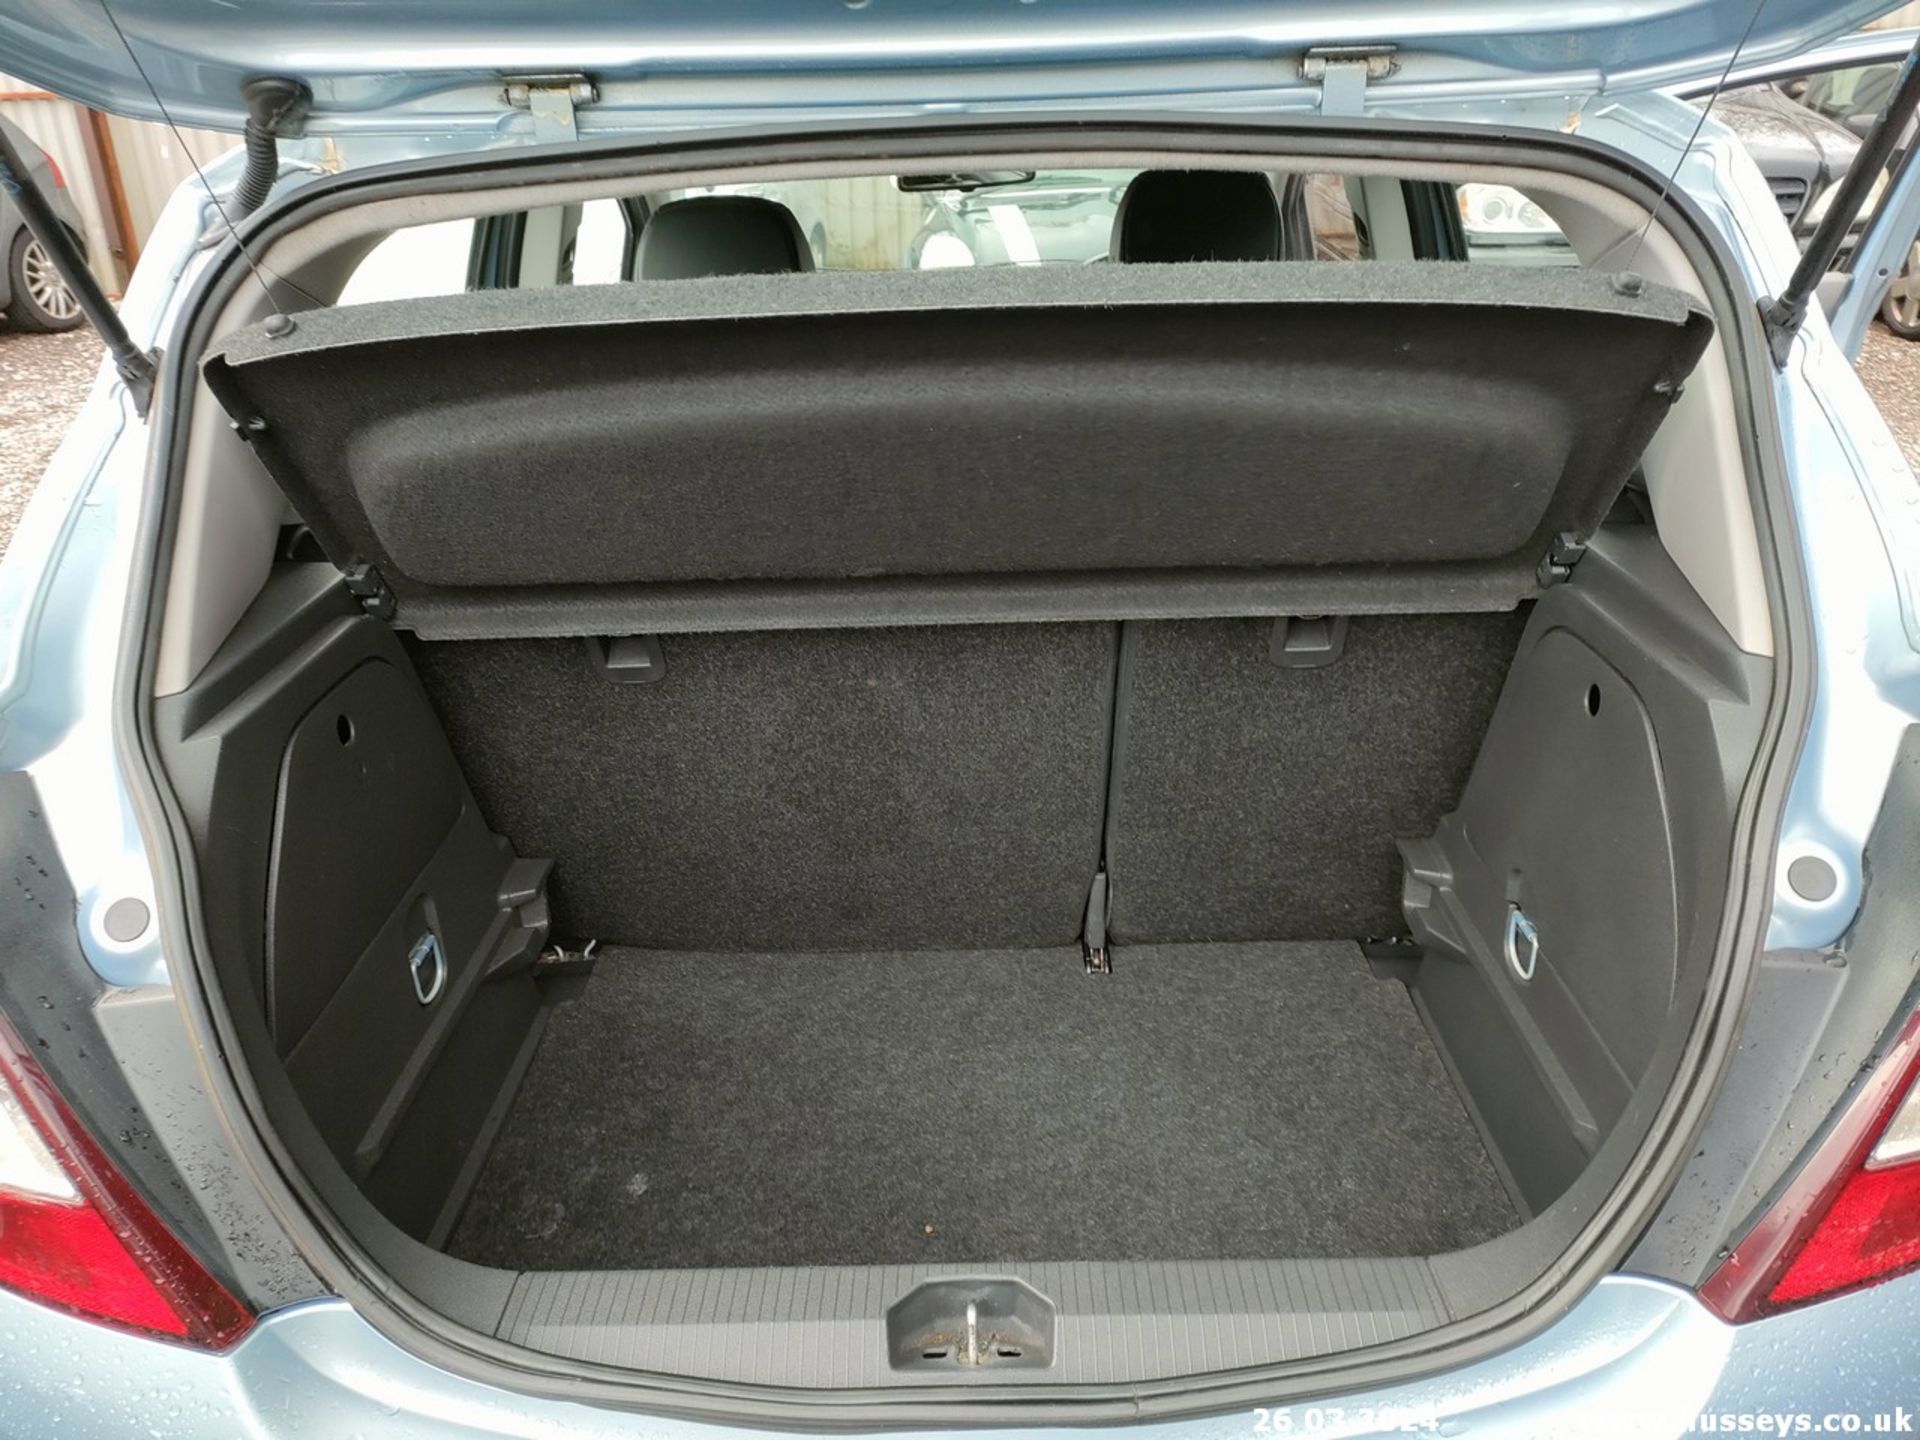 07/57 VAUXHALL CORSA DESIGN - 1364cc 5dr Hatchback (Blue, 118k) - Image 54 of 59